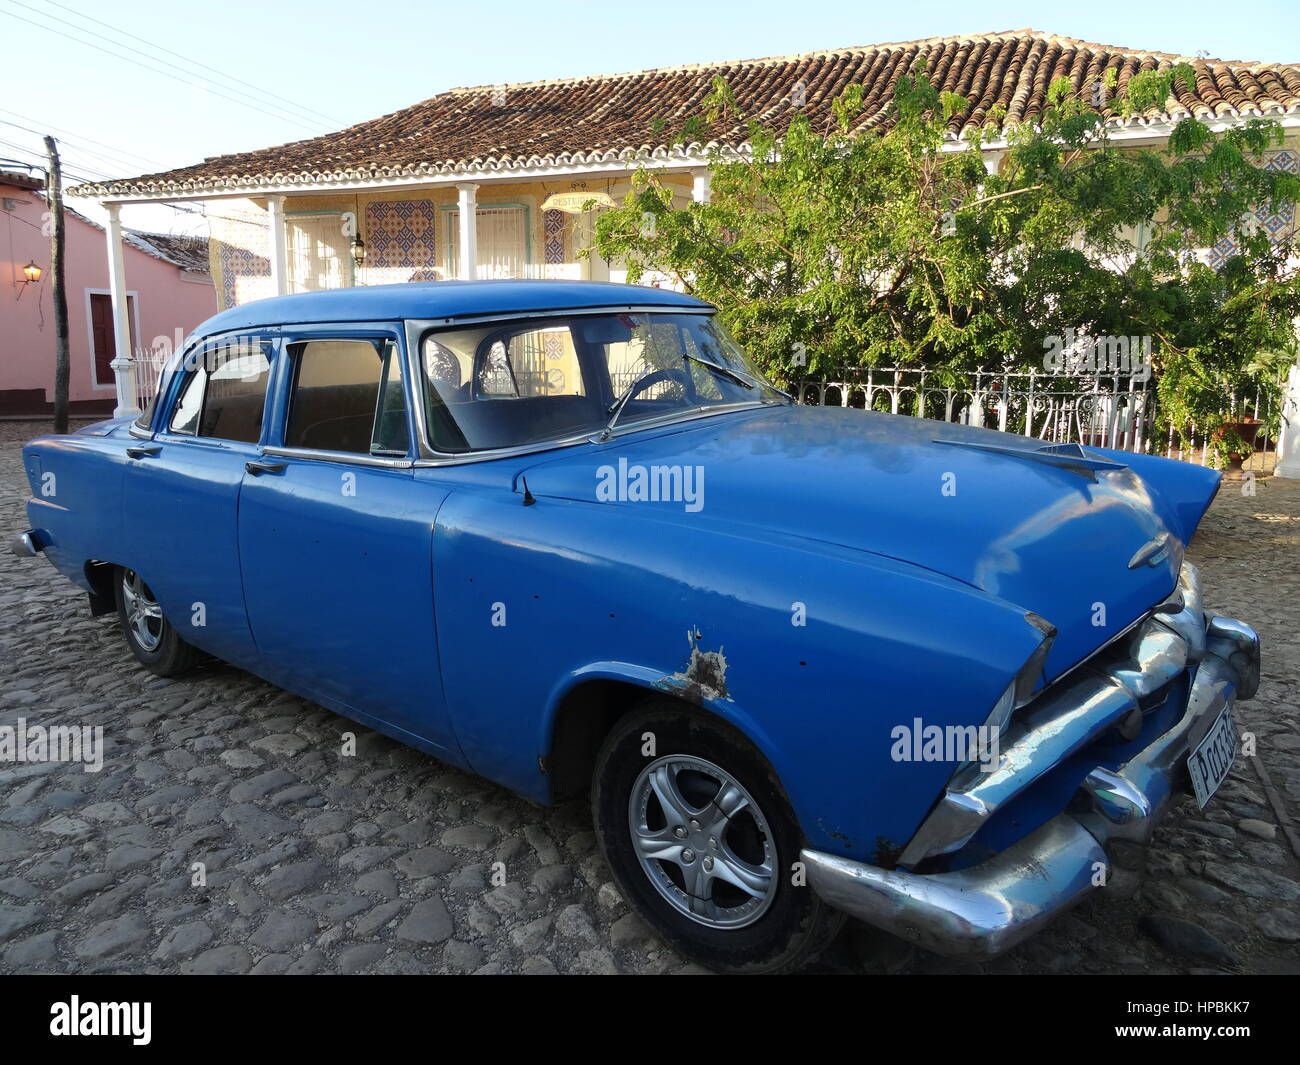 Classic american auto blu parcheggiata su una strada a ciottoli in Trinidad, Cuba con i vecchi edifici coloniali sullo sfondo Foto Stock